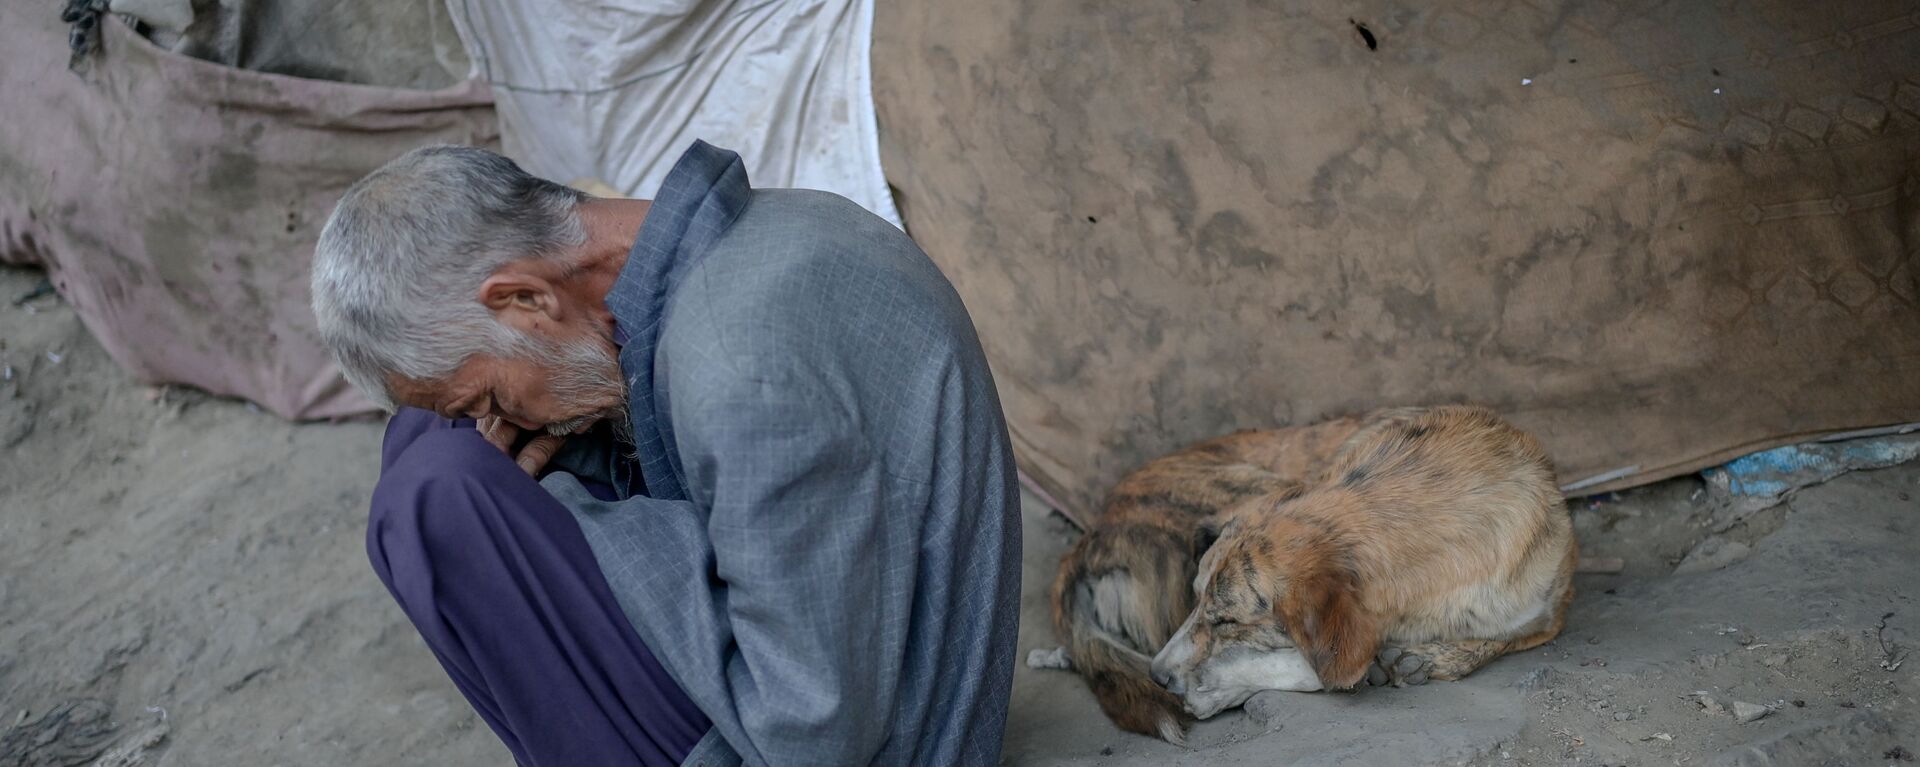 Наркоман, спящий рядом с собакой под мостом в Кабуле - Sputnik Таджикистан, 1920, 17.11.2021